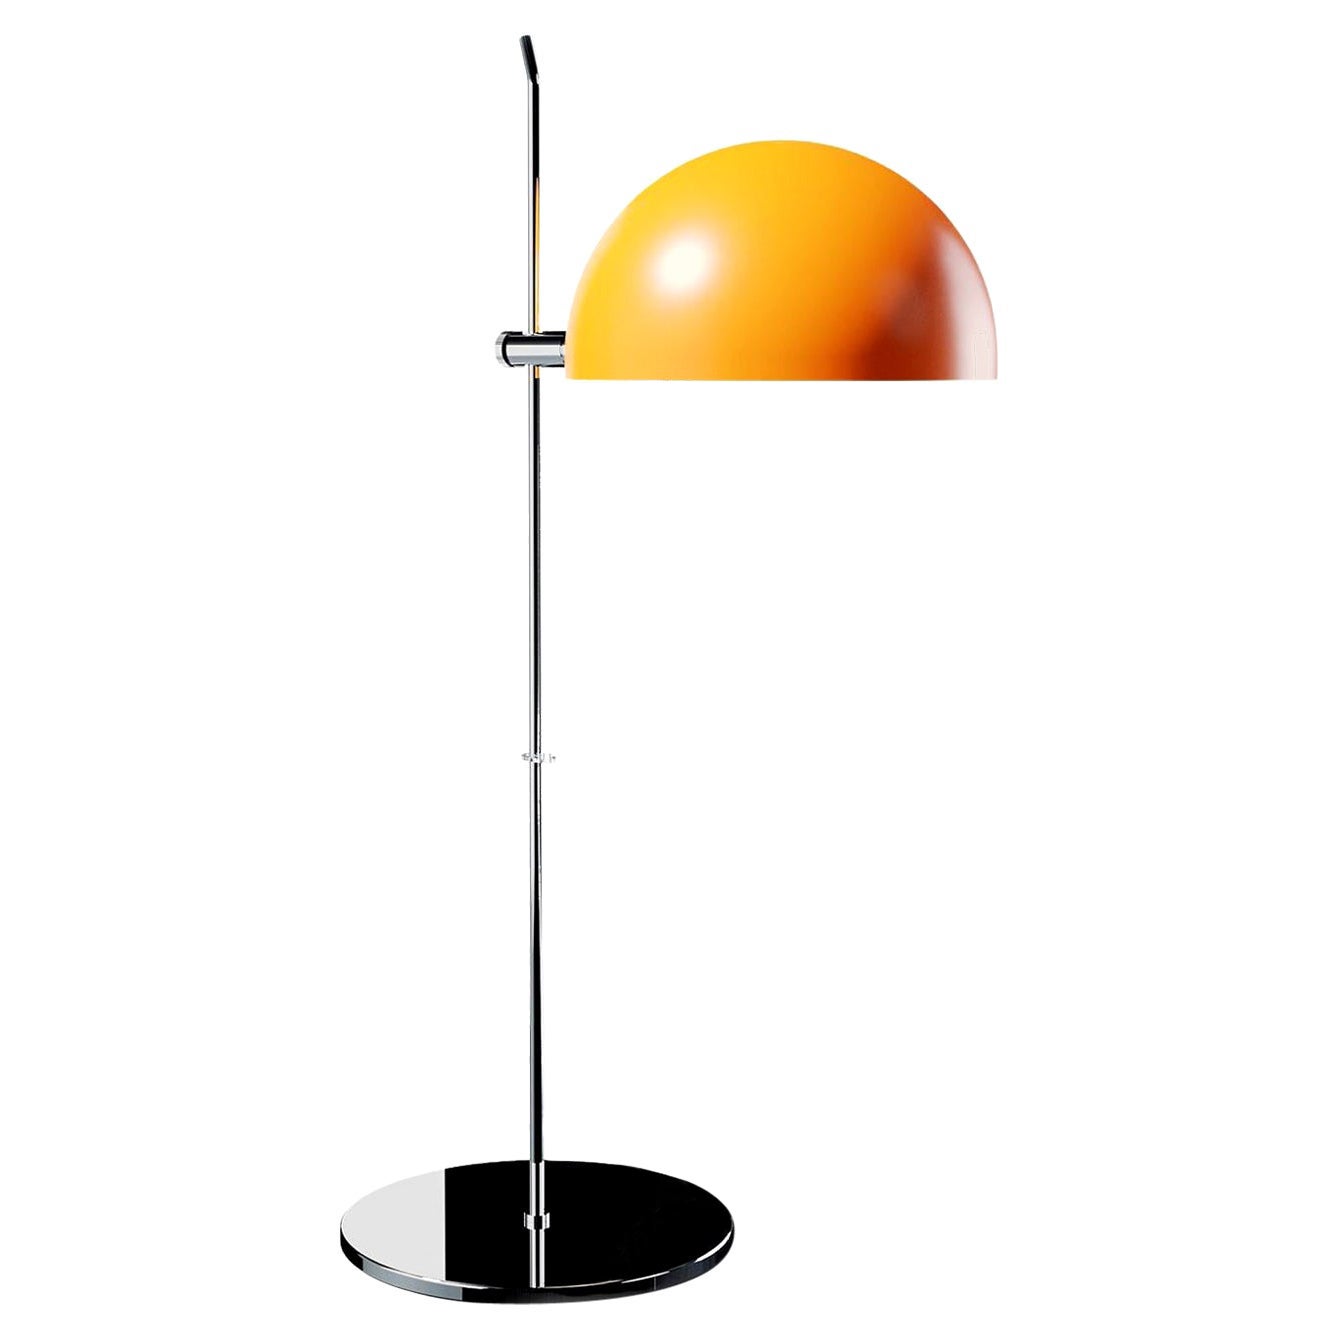 Alain Richard 'A21' Desk Lamp in Orange for Disderot For Sale